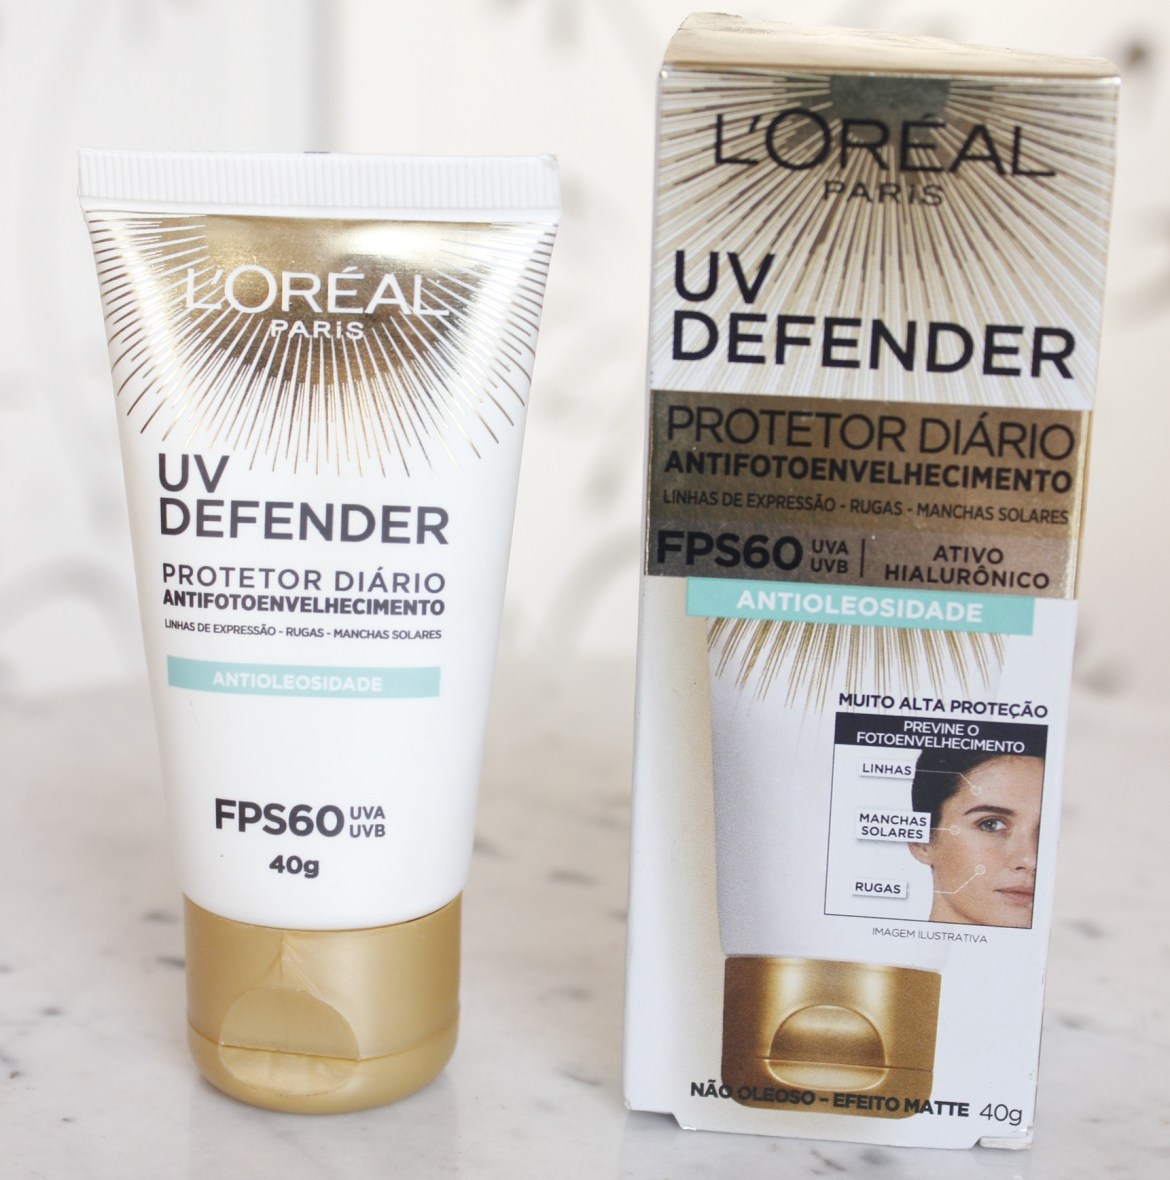 Protetor Solar Facial L’Oréal Paris UV Defender Antioleosidade FPS 60, 40g